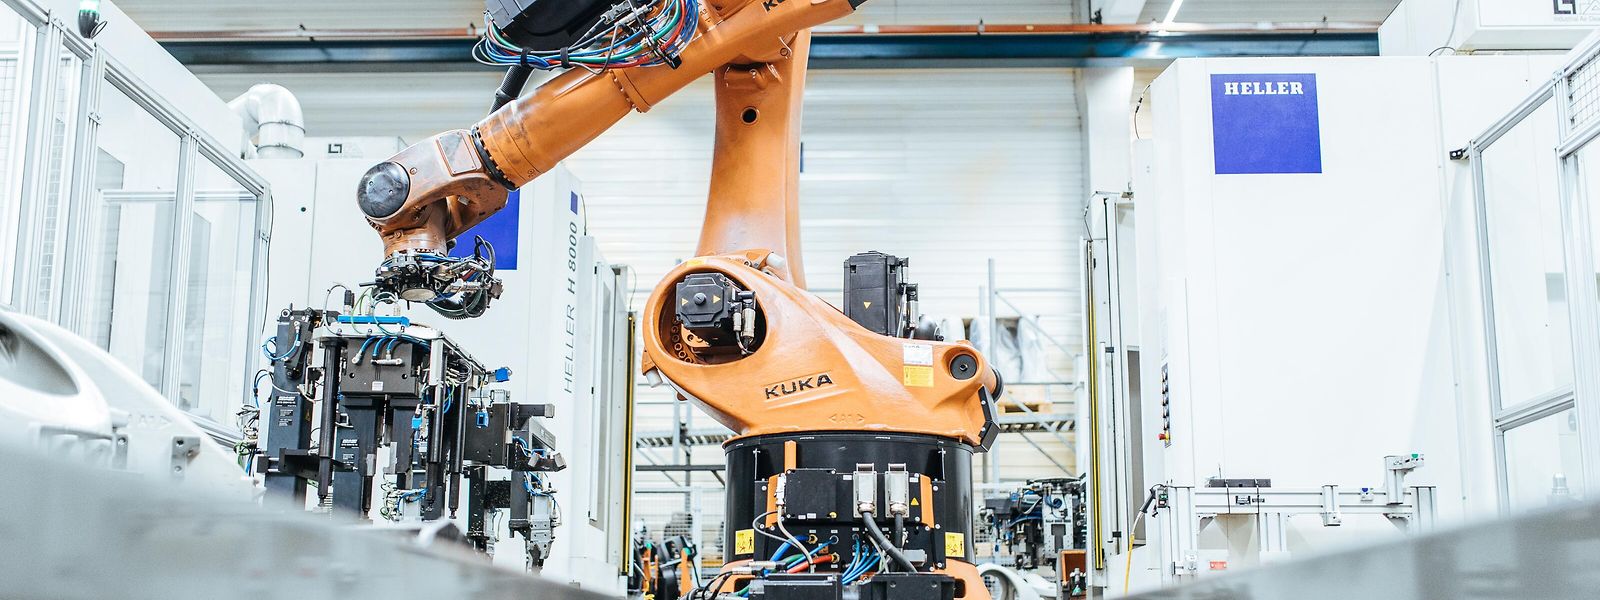 Viele Firmenübernahmen wie die des deutschen Roboterherstellers Kuka durch chinesische Unternehmen, sind umstritten.